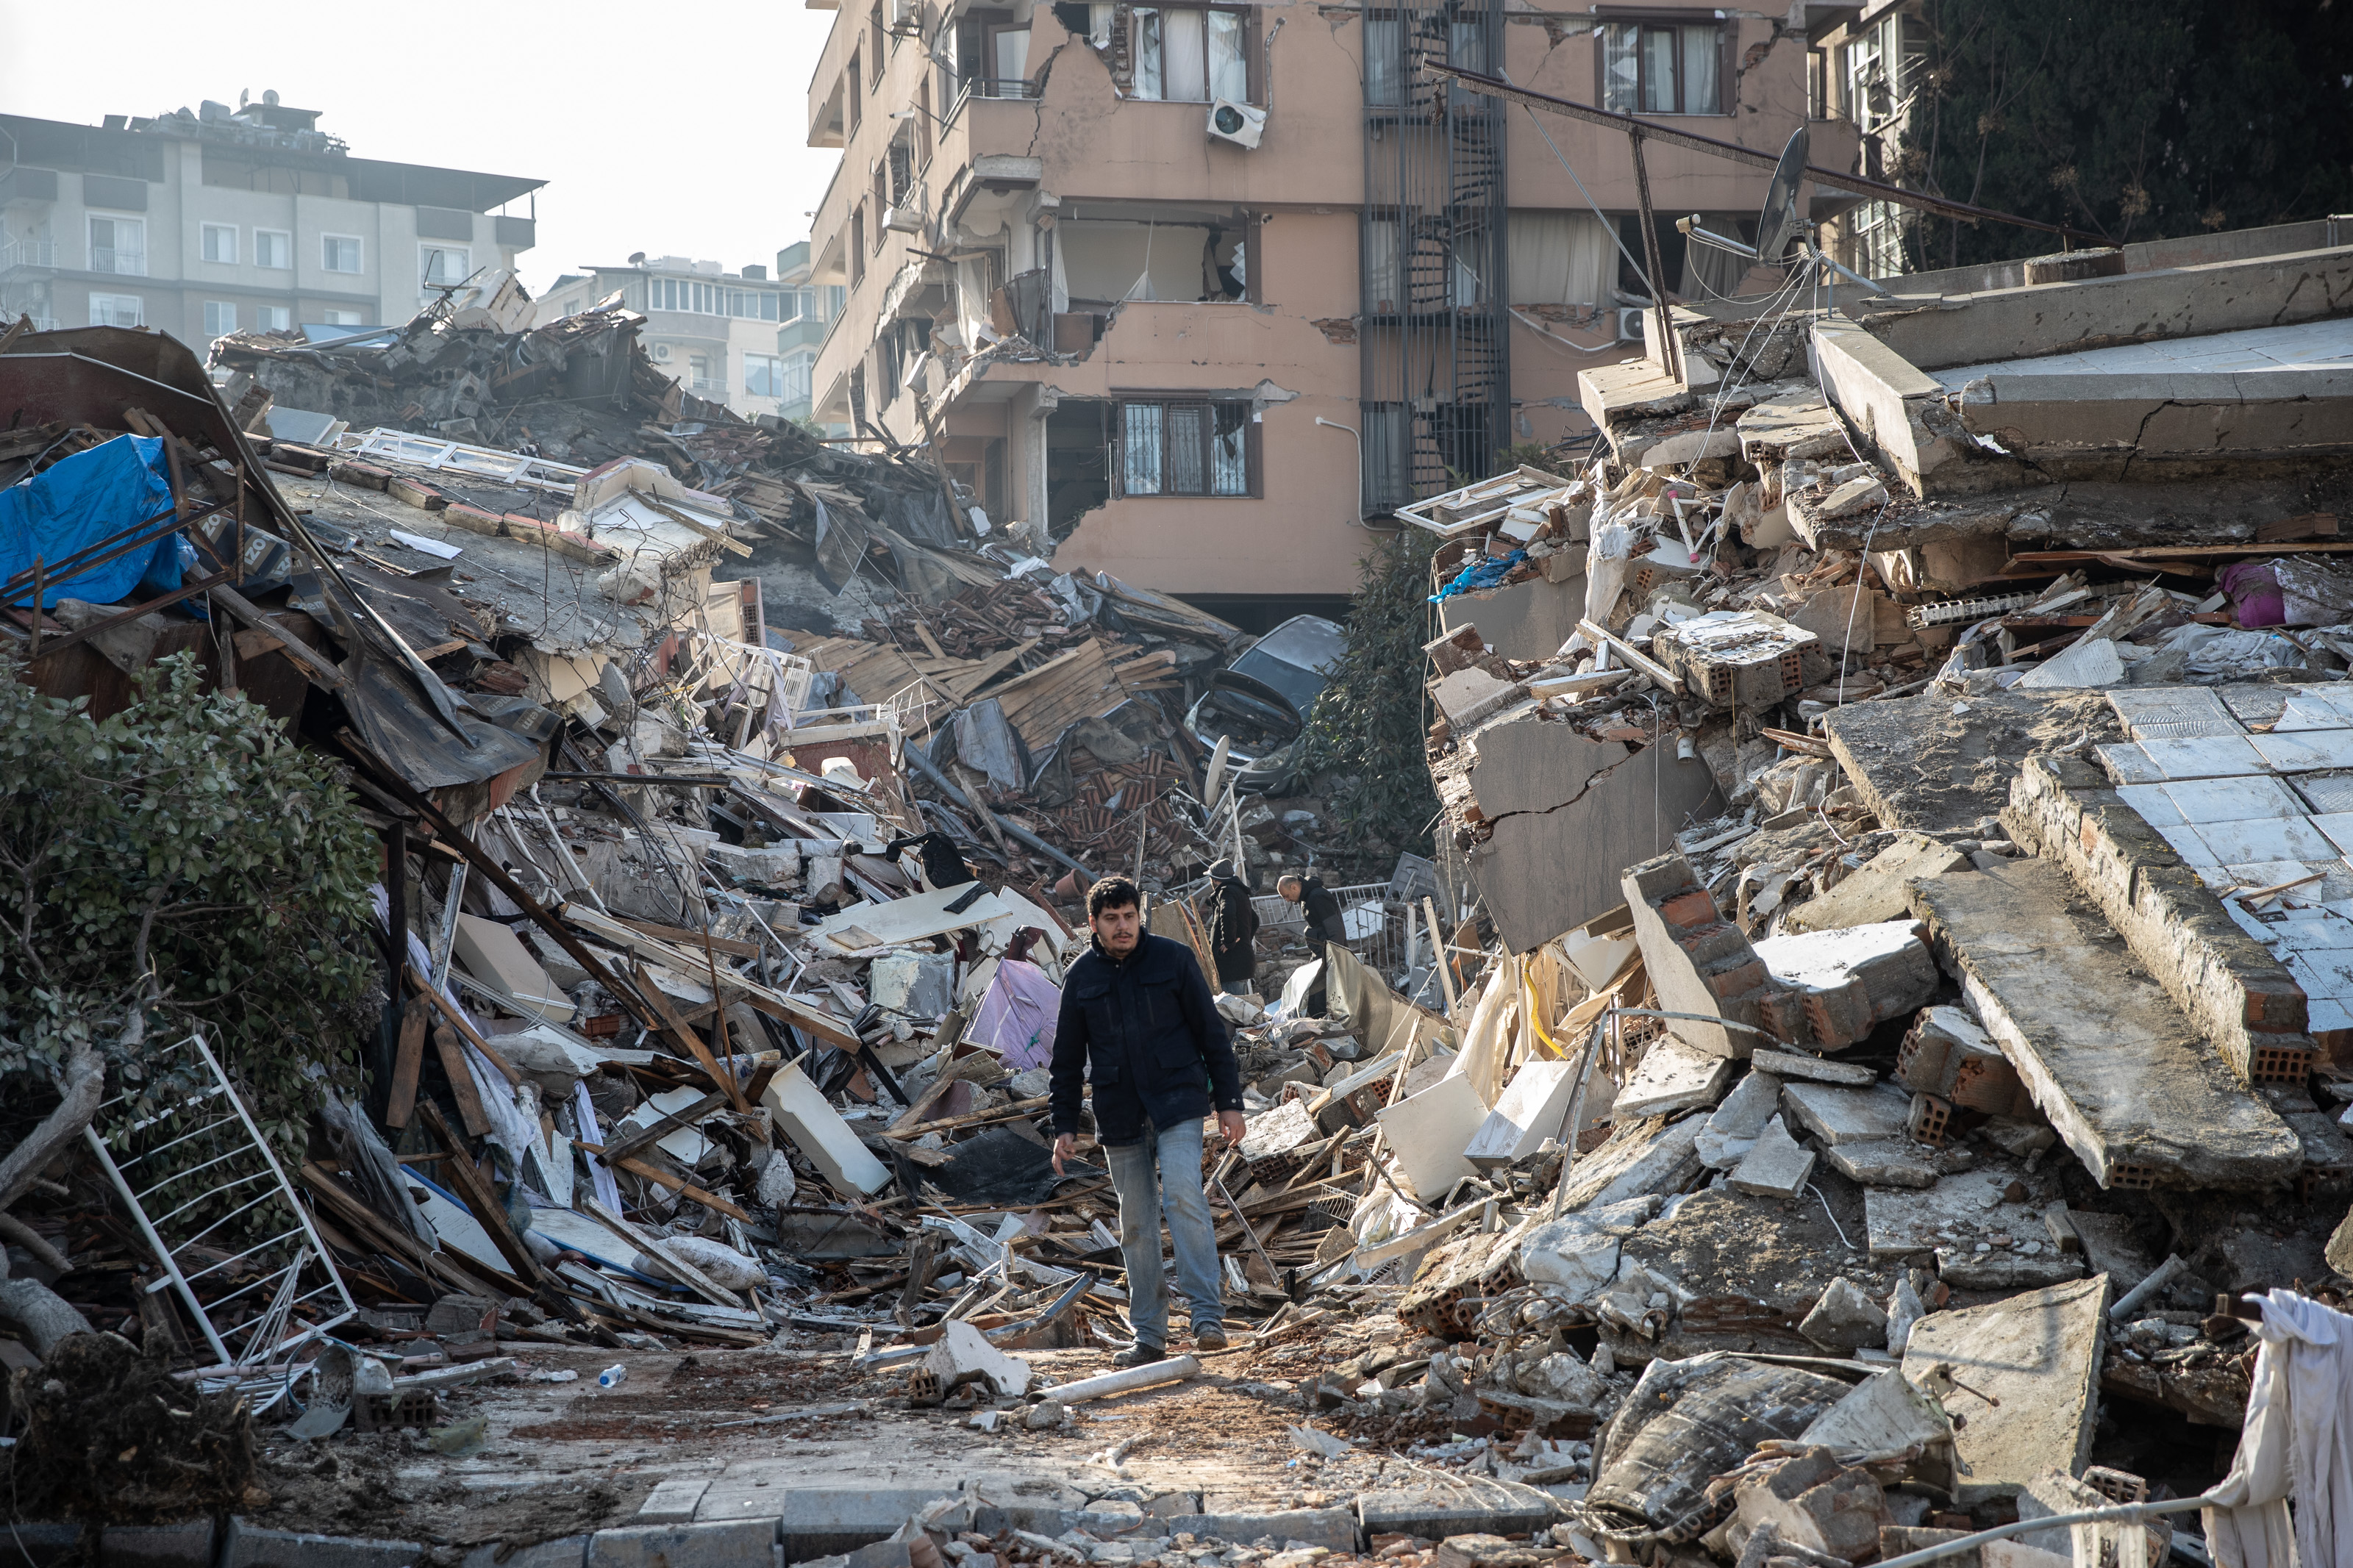 A man walks through the rubble following an earthquake in Turkey. 